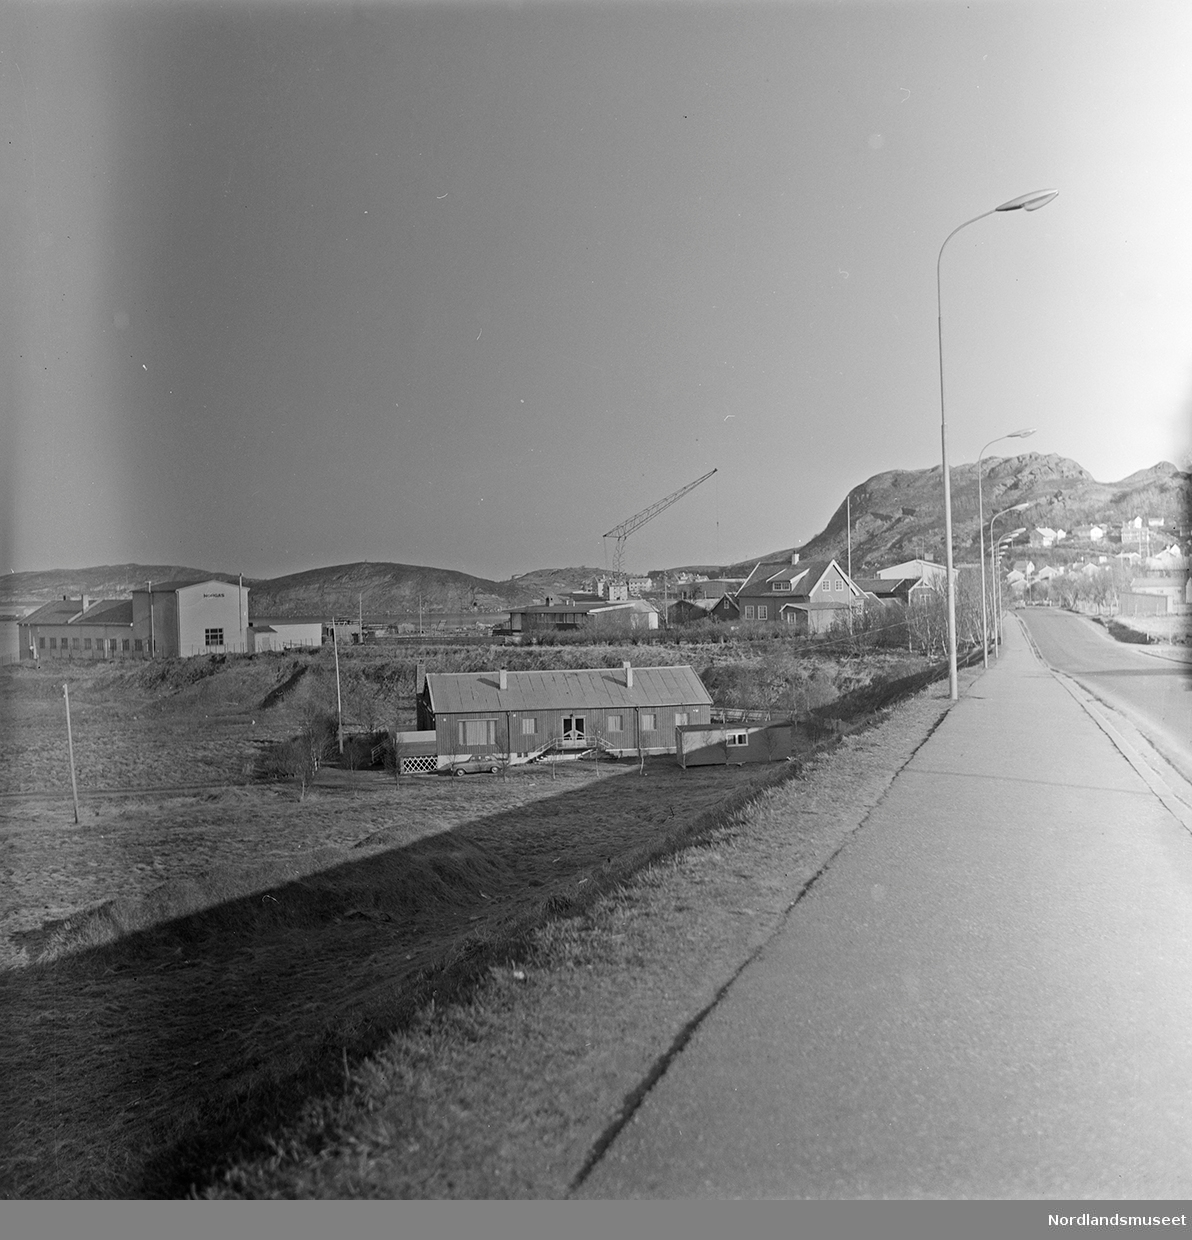 Bodø, bygninger, boligen til Bodø Teglverk. En bil står parkert til venstre foran boligen. Brakke til høyre foran boligen. Bebyggelse lenger bak til høyre. En kran ses midt på bildet i bakgrunnen. Bilde 2 er en positivkopi av et utsnitt av bildet.